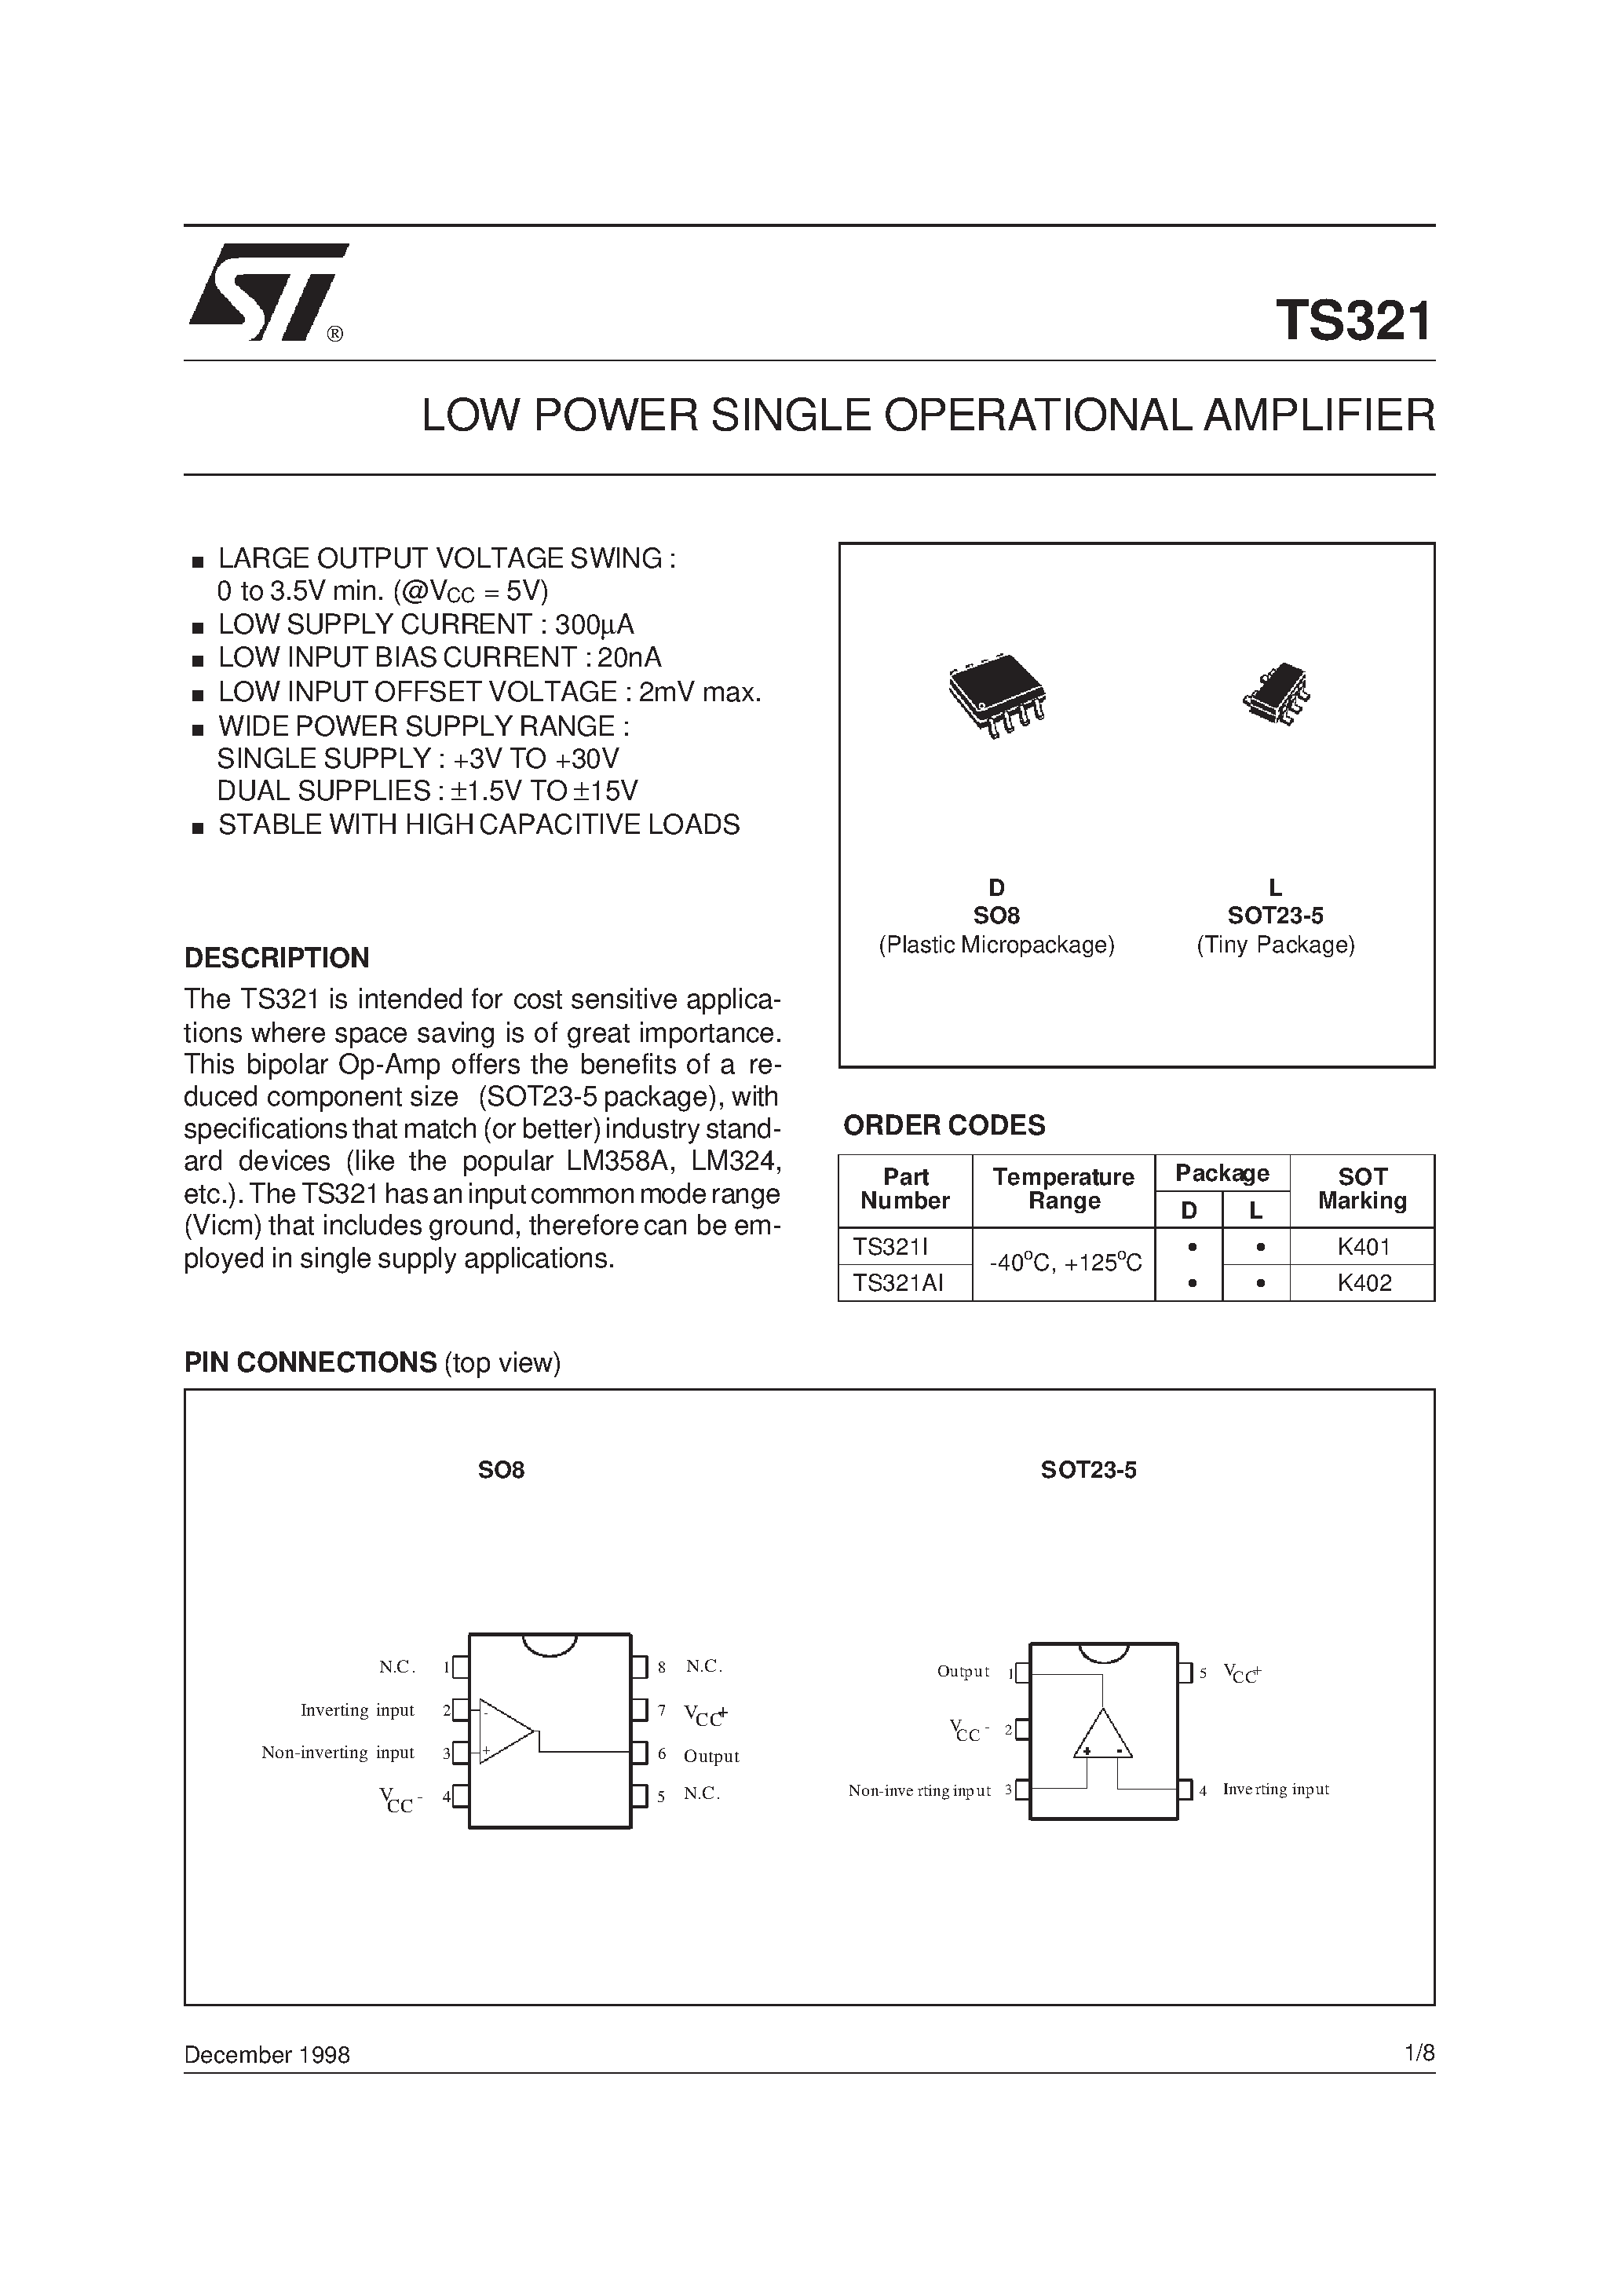 Даташит TS321AI - LOW POWER SINGLE OPERATIONAL AMPLIFIER страница 1